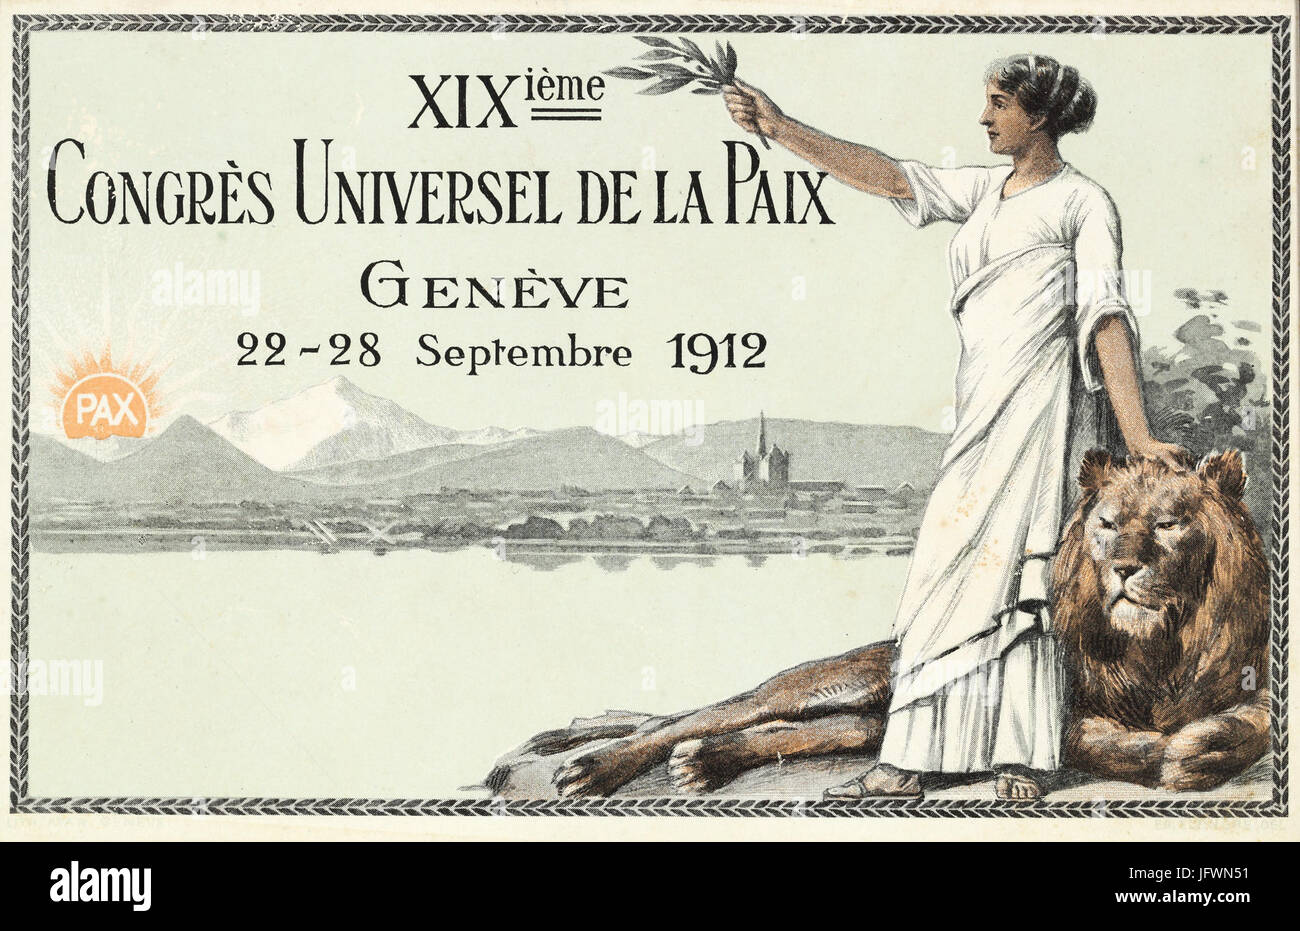 Carte postale du XIXème Congrès universel de la Paix à Genève Stock Photo